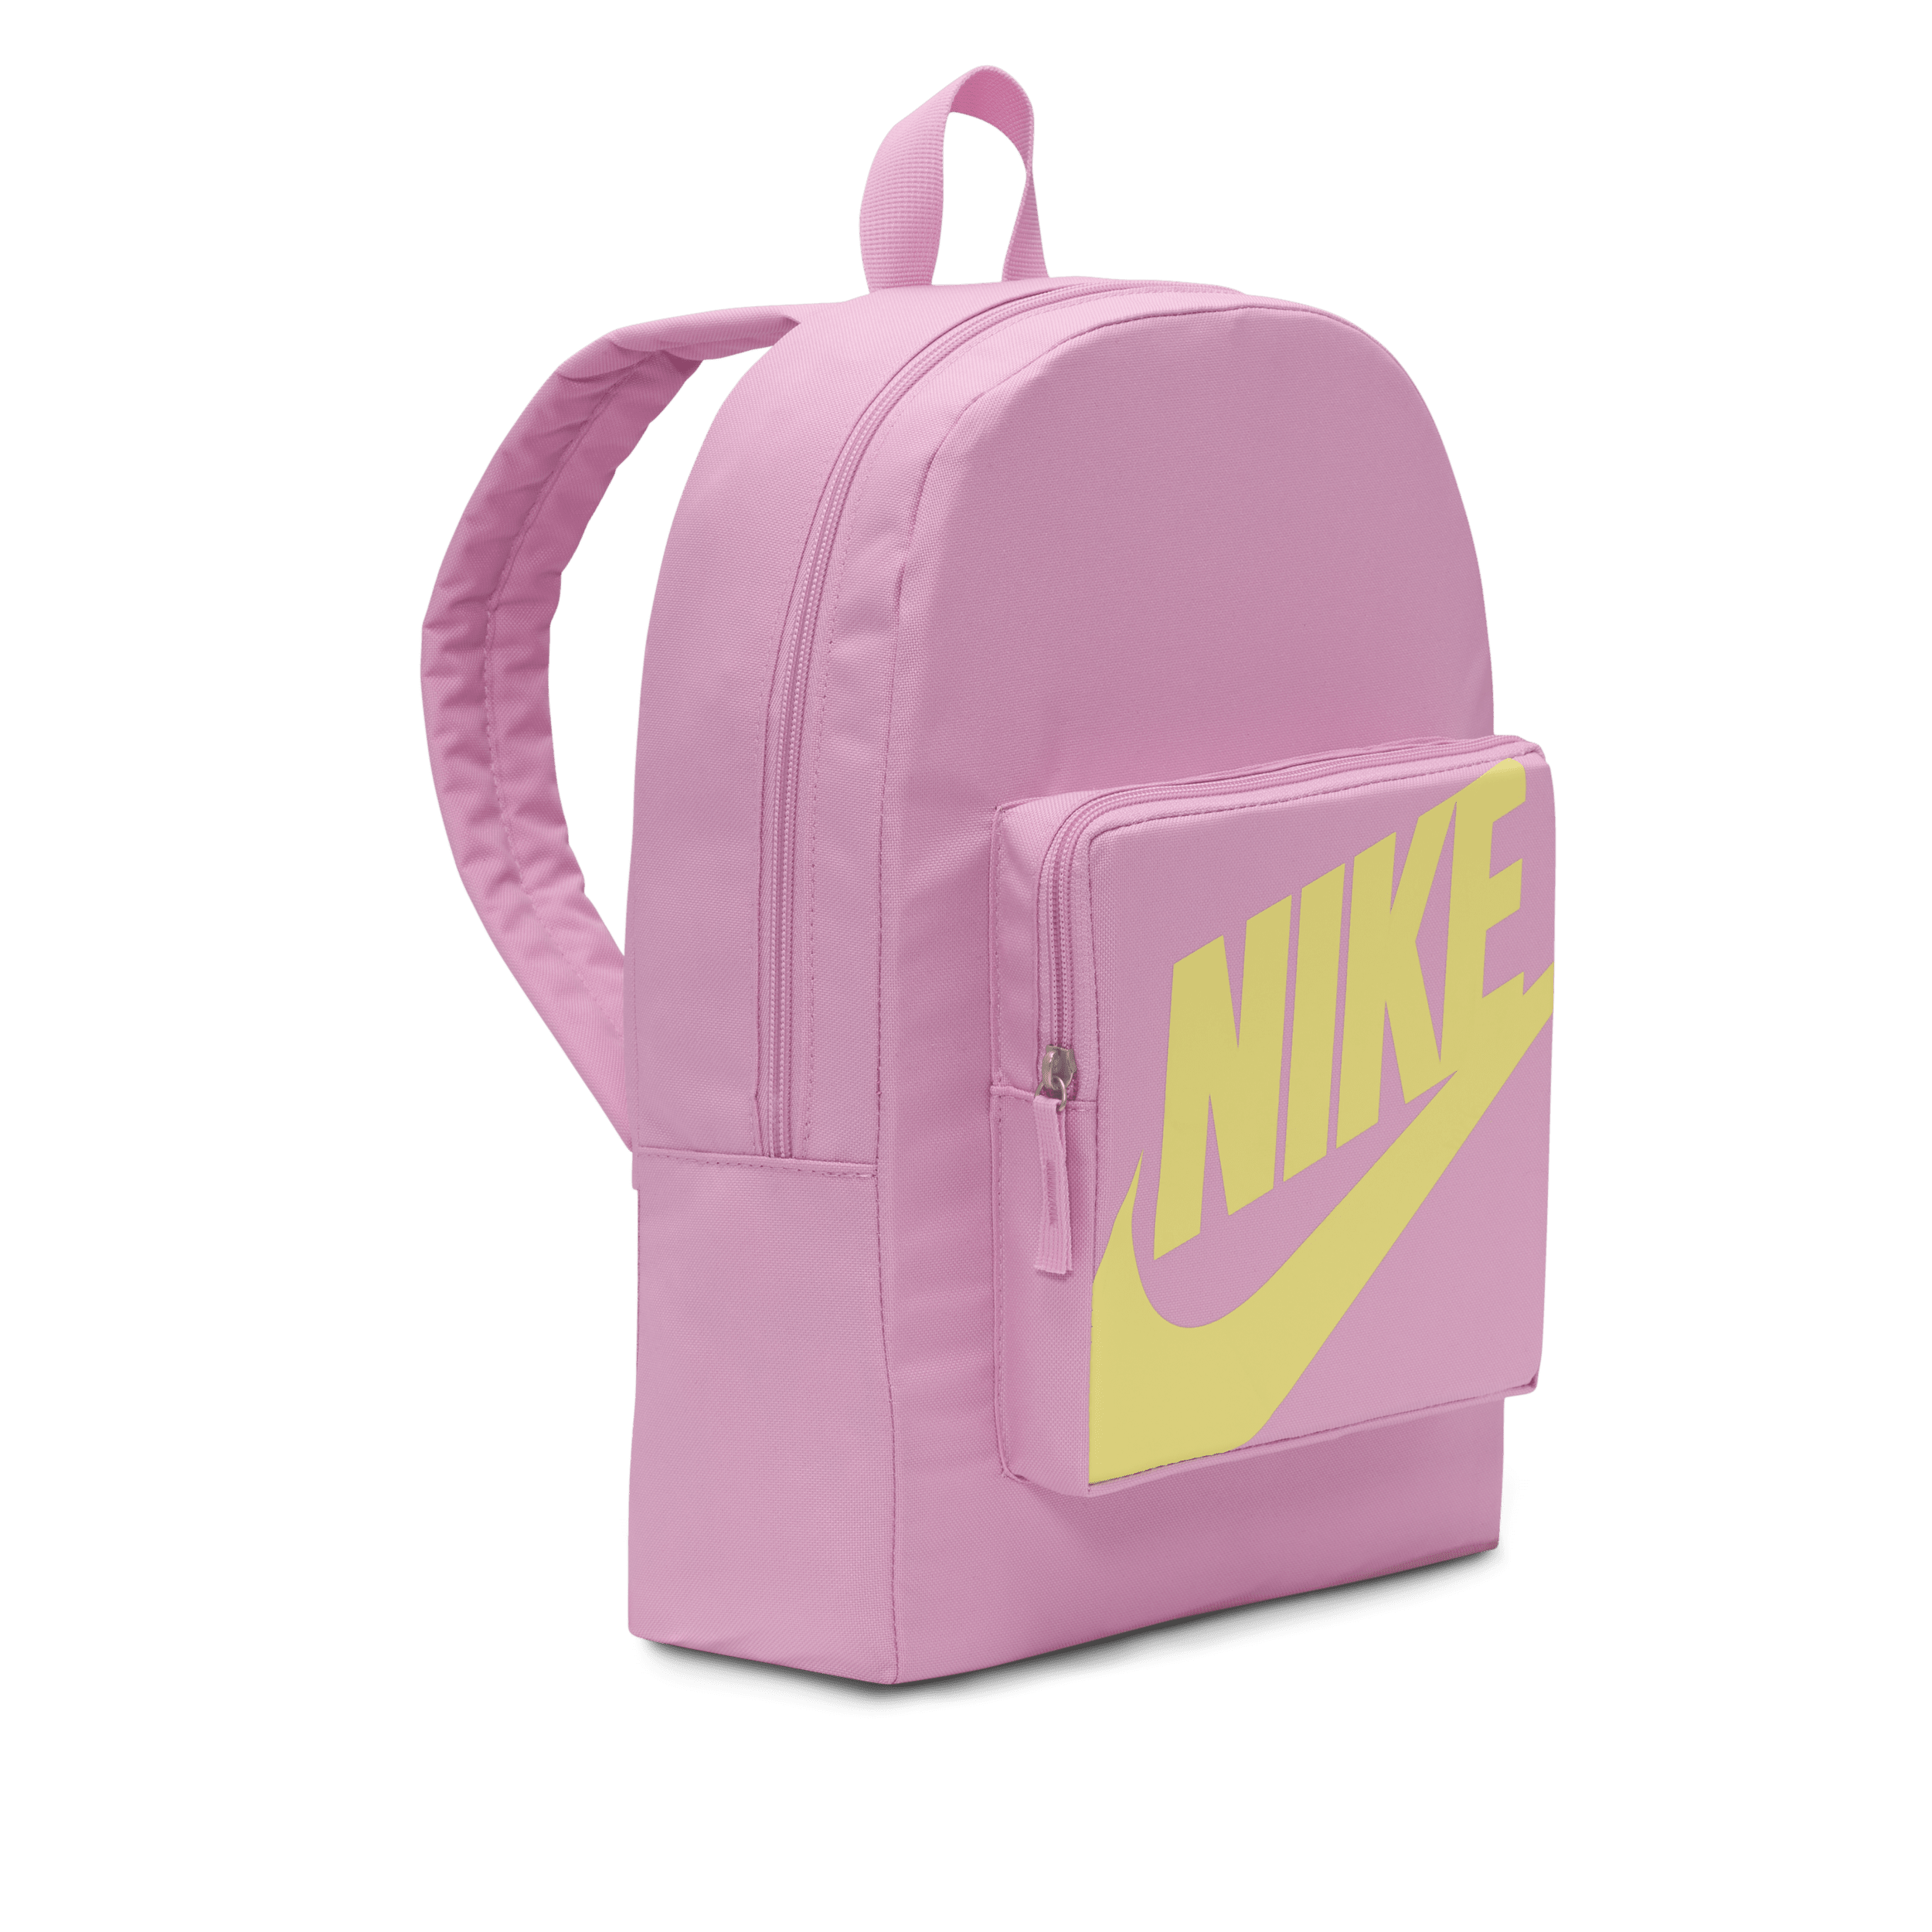 Nike Classic Rugzak voor kids (16 liter) Roze